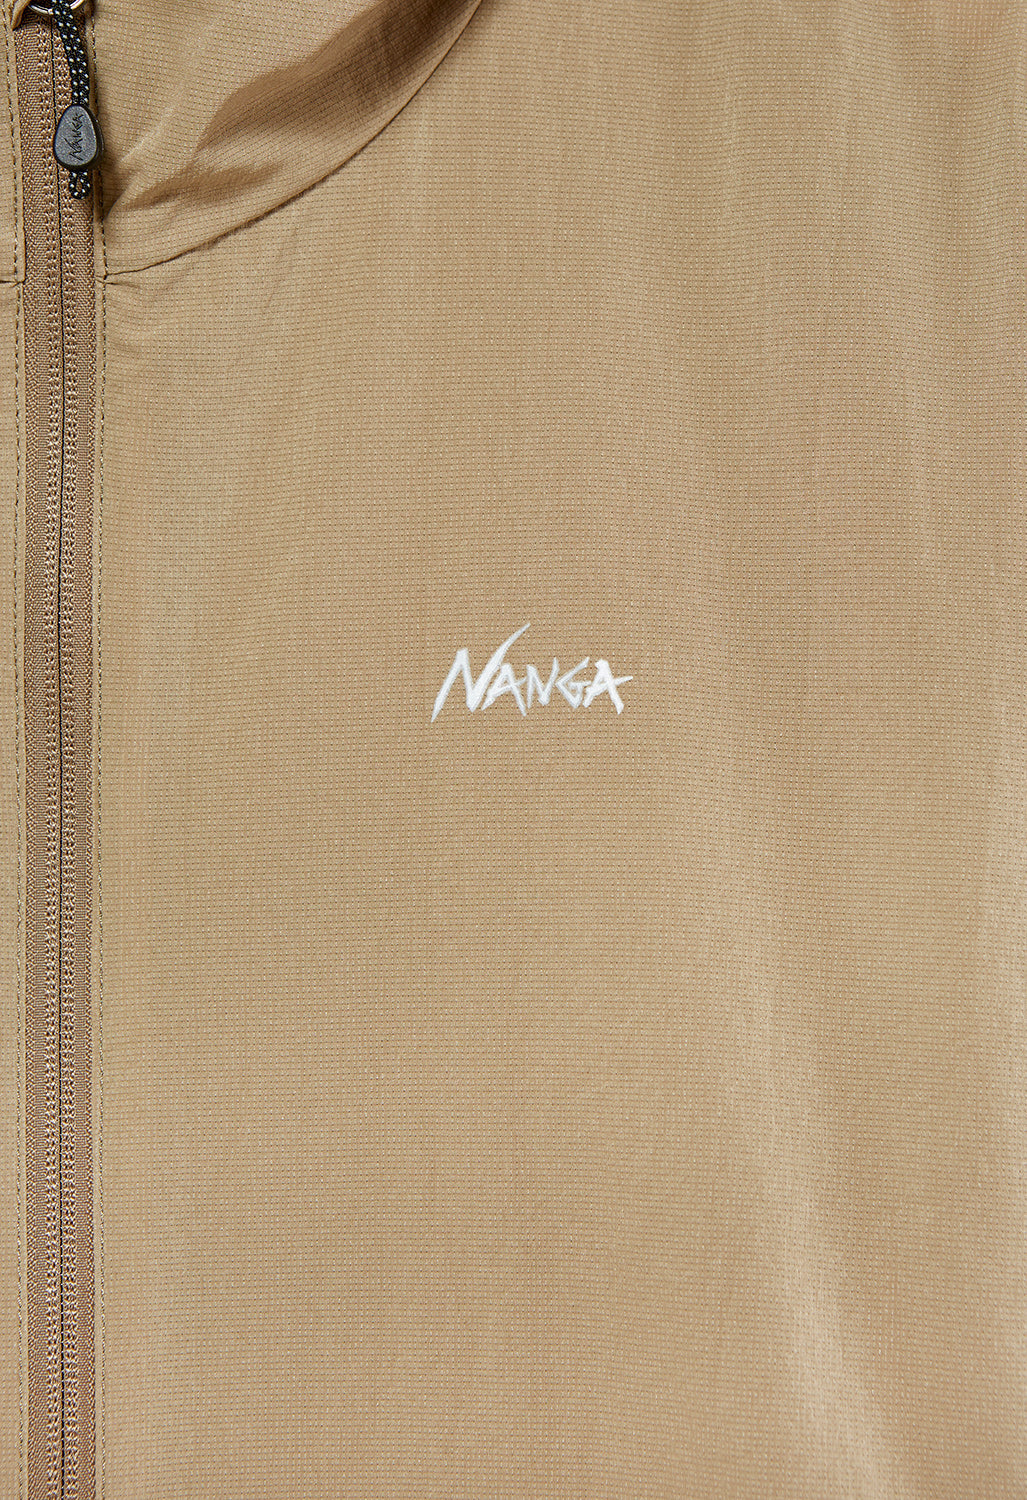 Nanga Men's Air Cloth Comfy Zip Parka Jacket - Beige